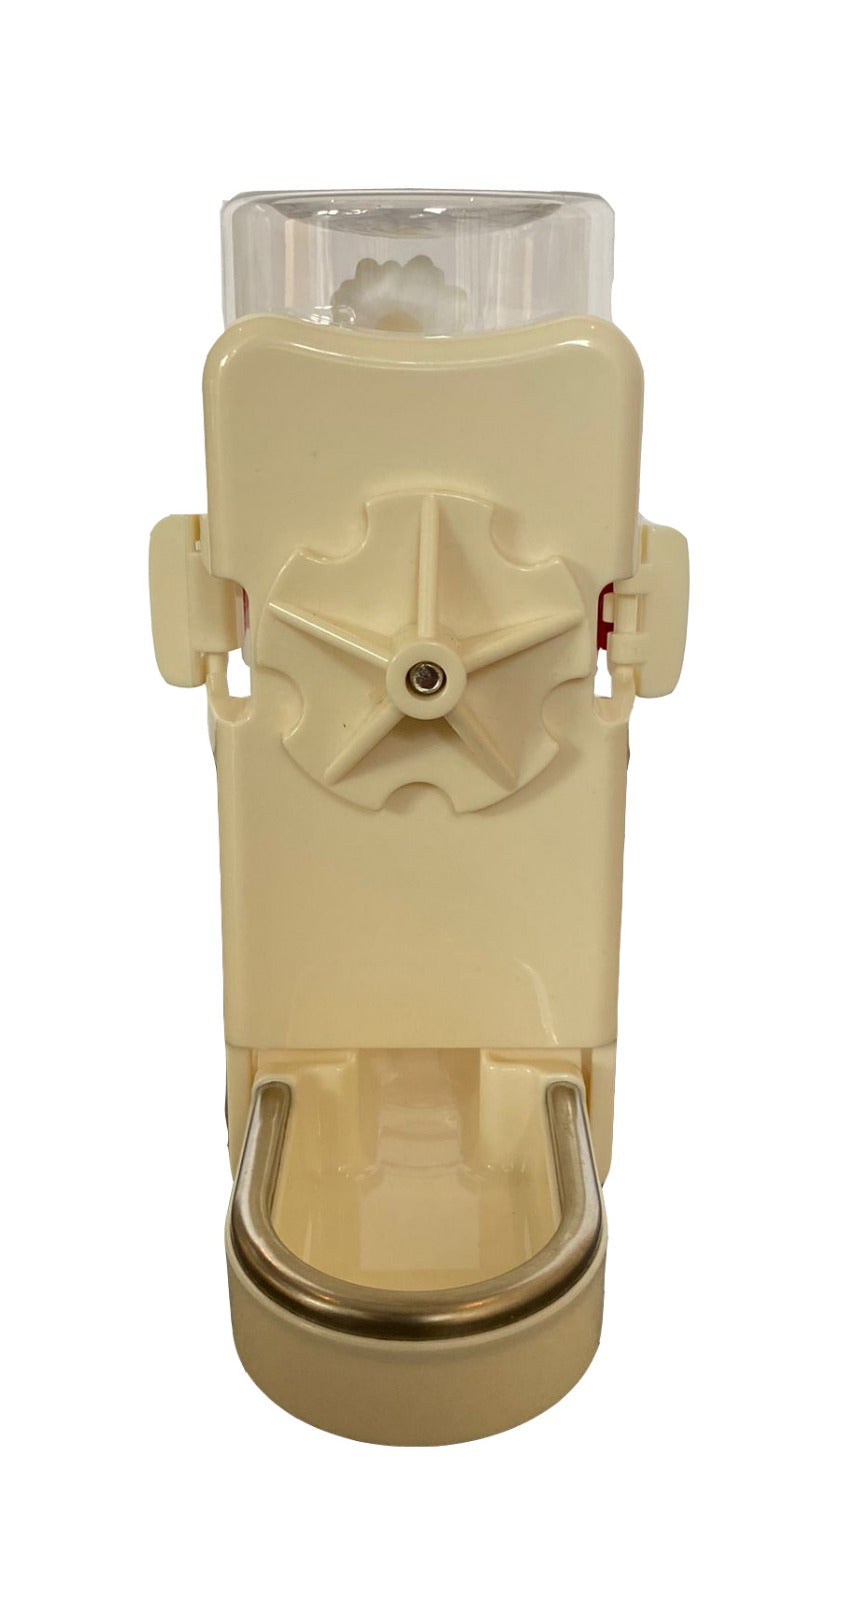 Small Foot Water Bottle Dispenser 400ml (White)